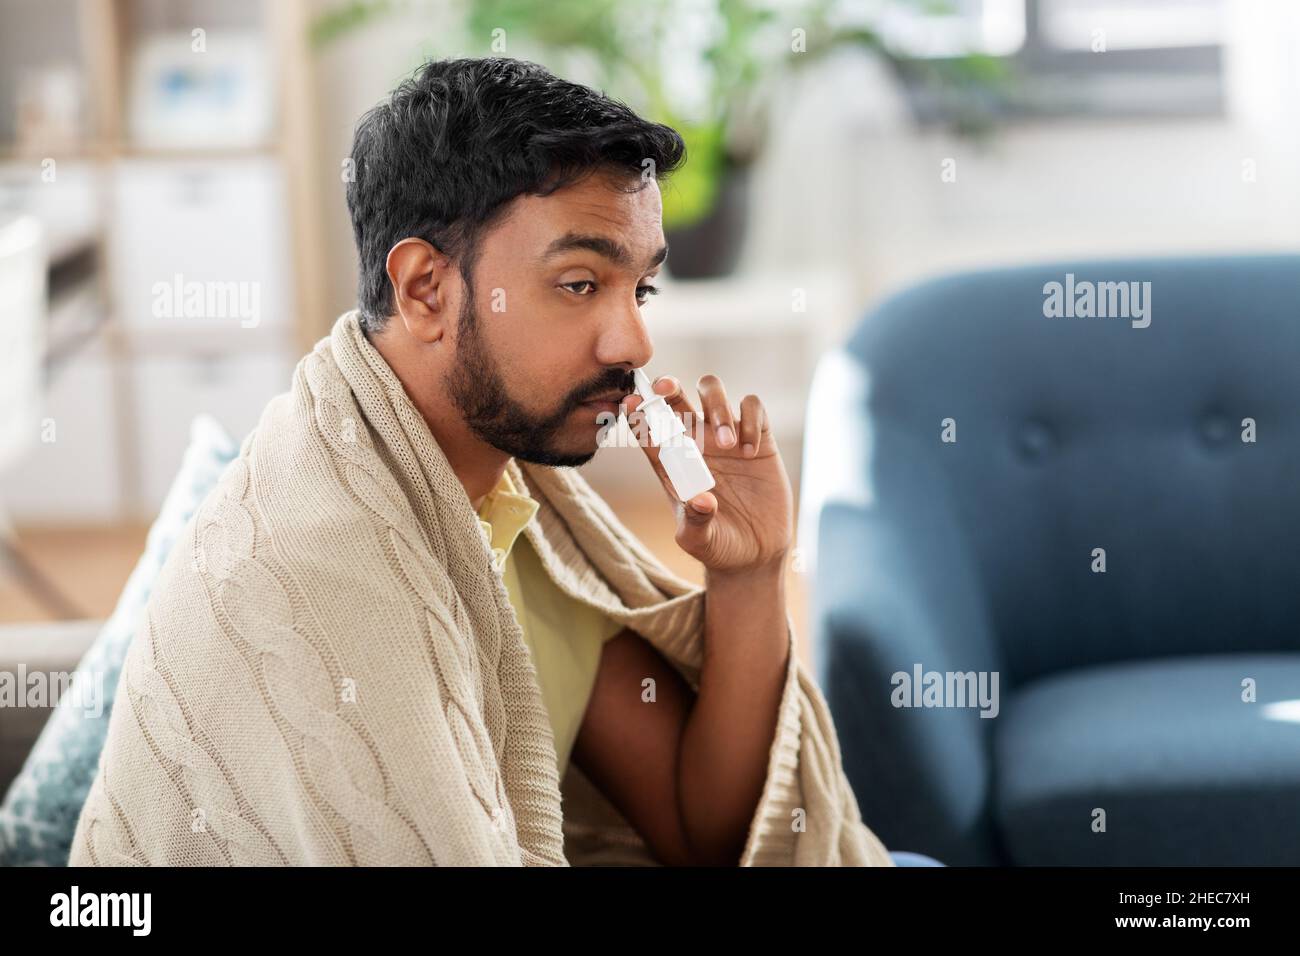 sick indian man using nasal spray at home Stock Photo